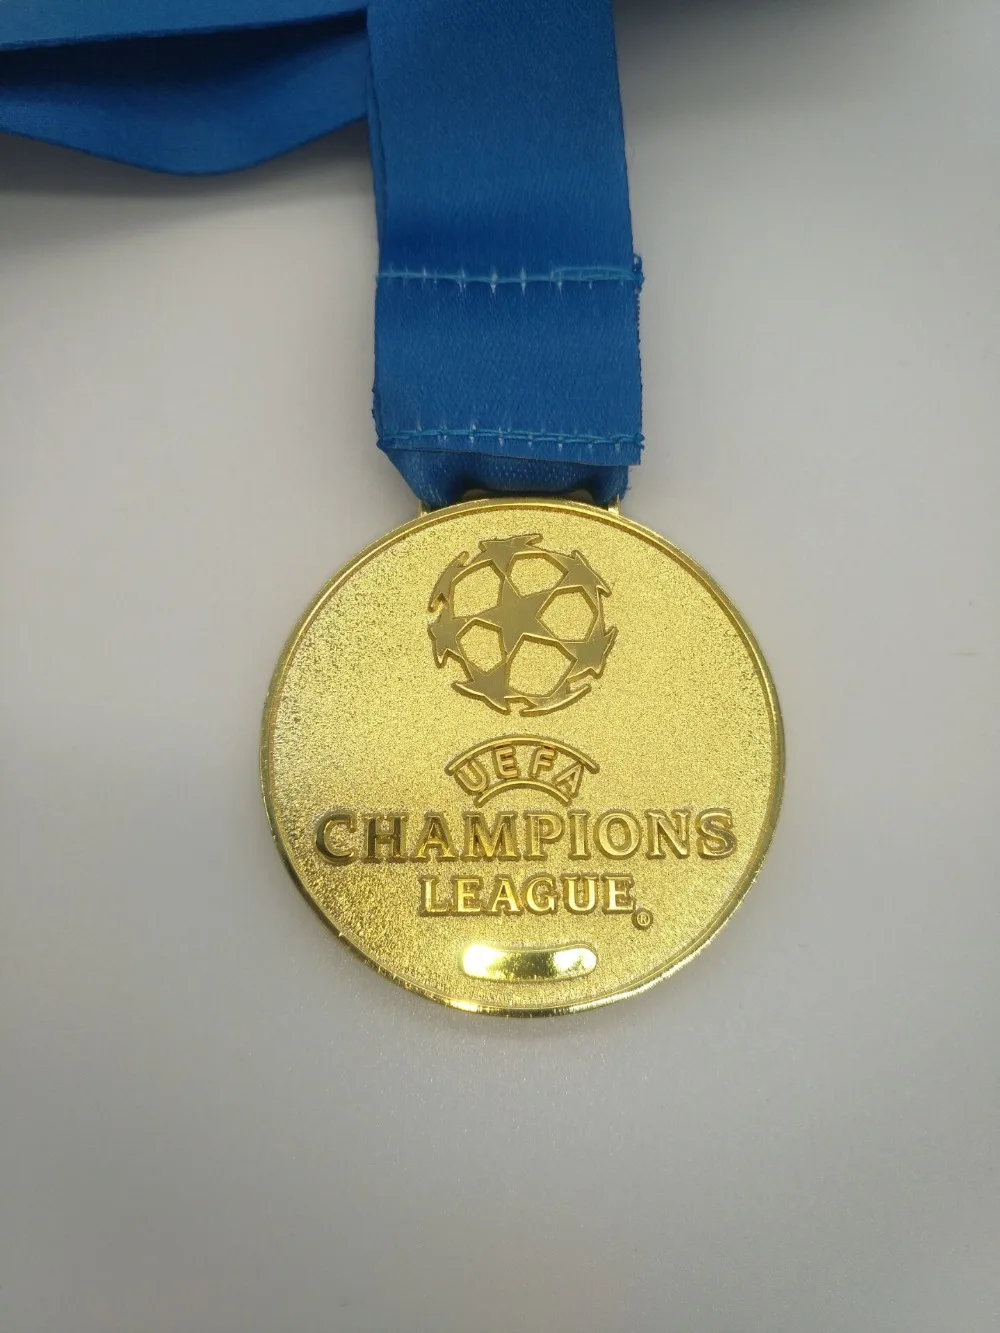 Европа Футбольная Лига чемпионов золотая медаль Futbol поклонников Memento коллекция реалистичные 1:1 Реплика медали металлические футбол